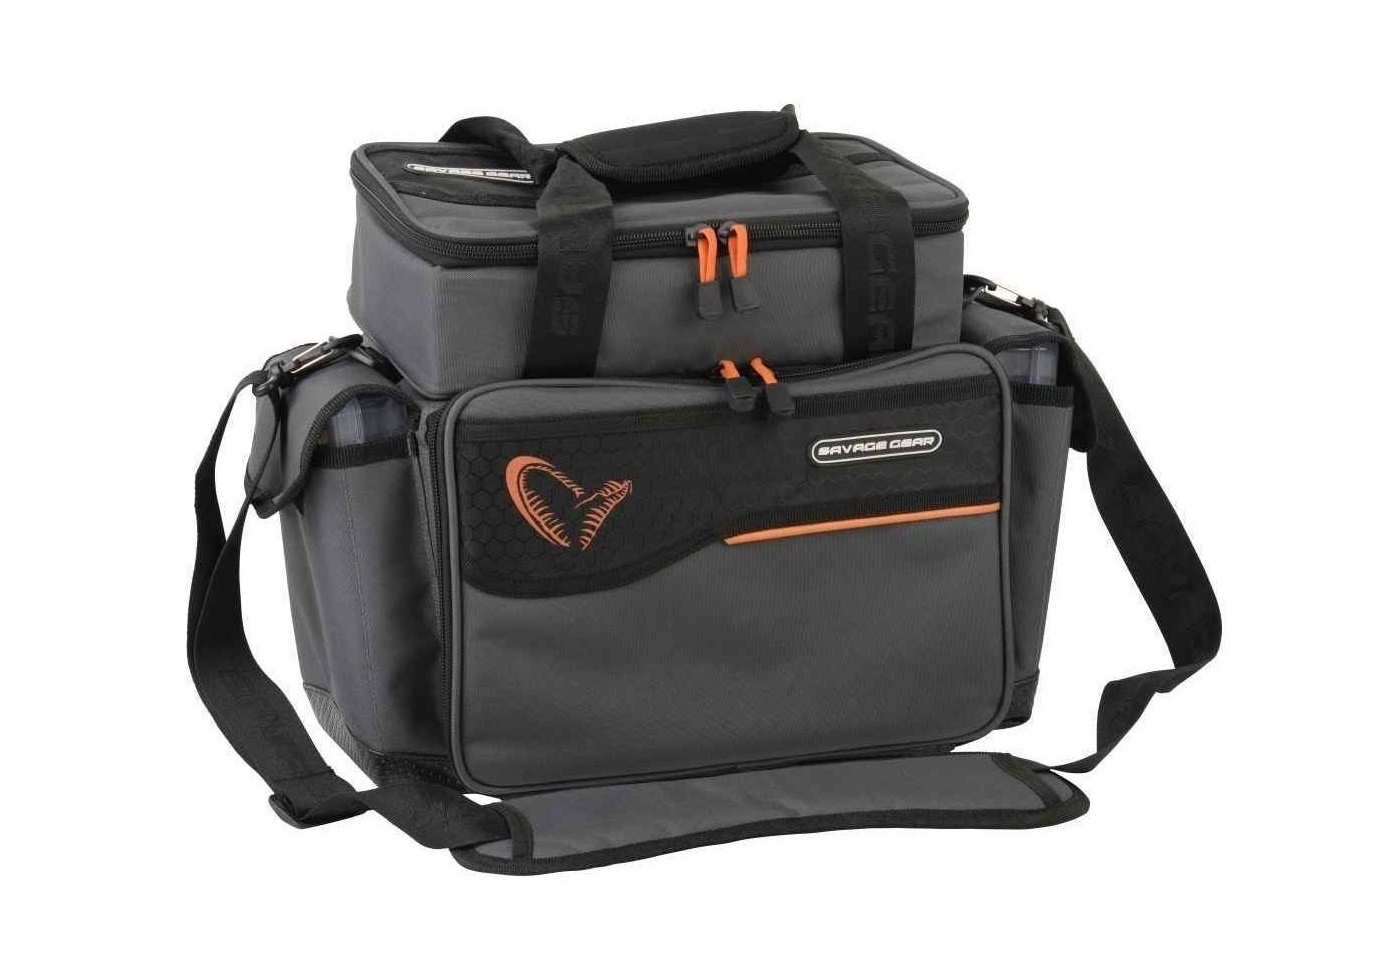 Taška Lure Specialist Bag veľ. M / Tašky a obaly / prívlačové tašky